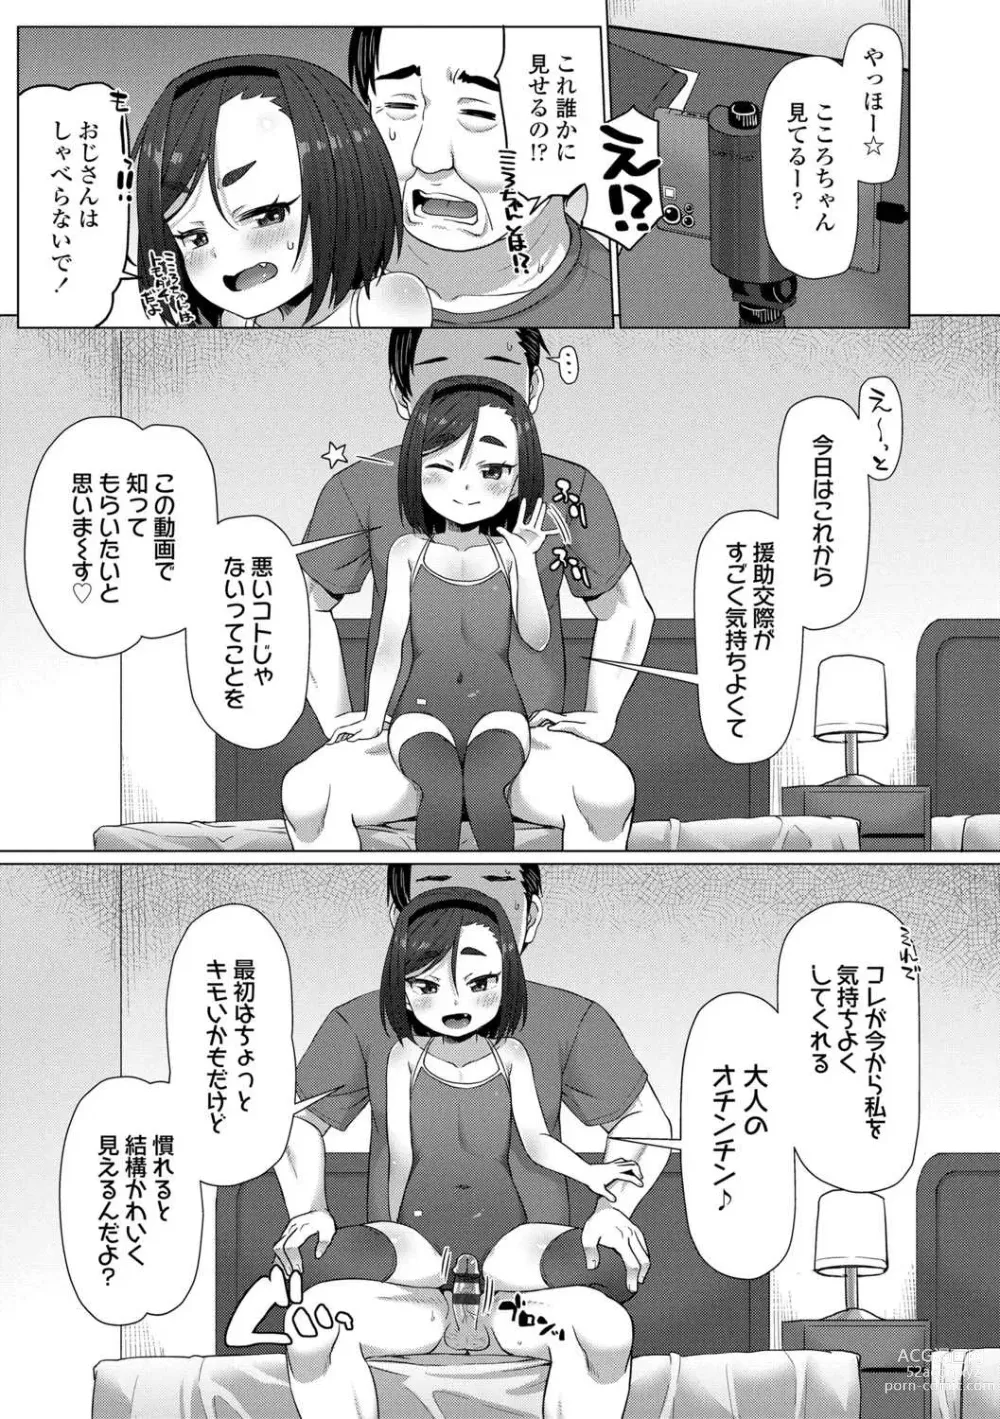 Page 17 of manga Nukunuku Mini Holes